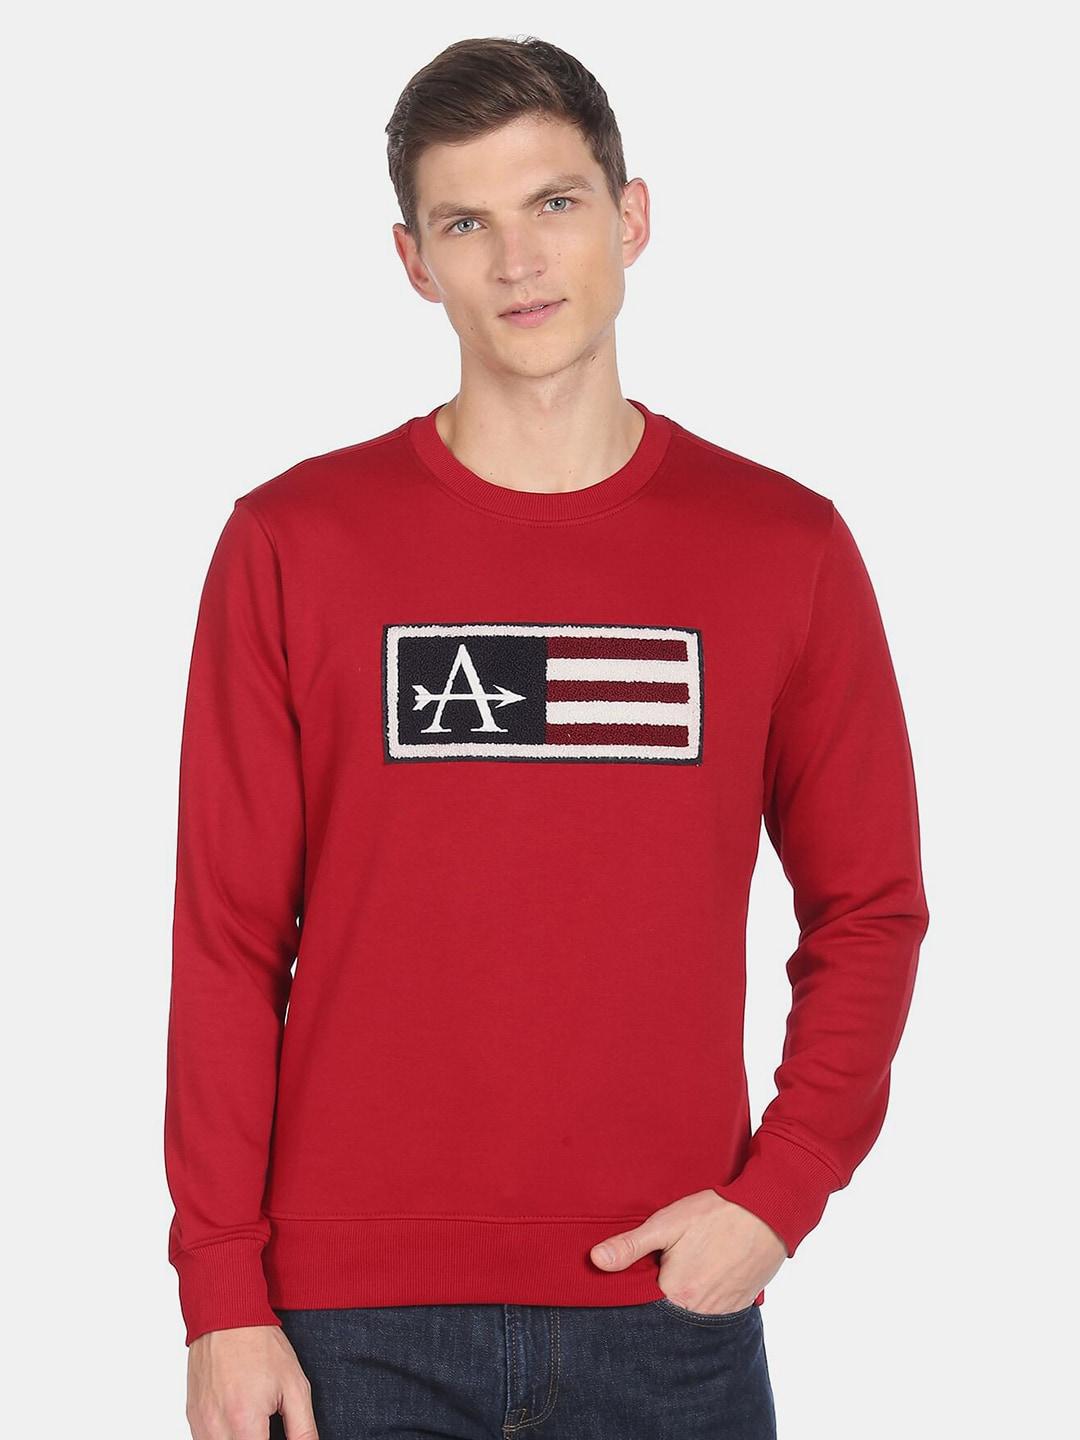 arrow-sport-men-applique-sweatshirt